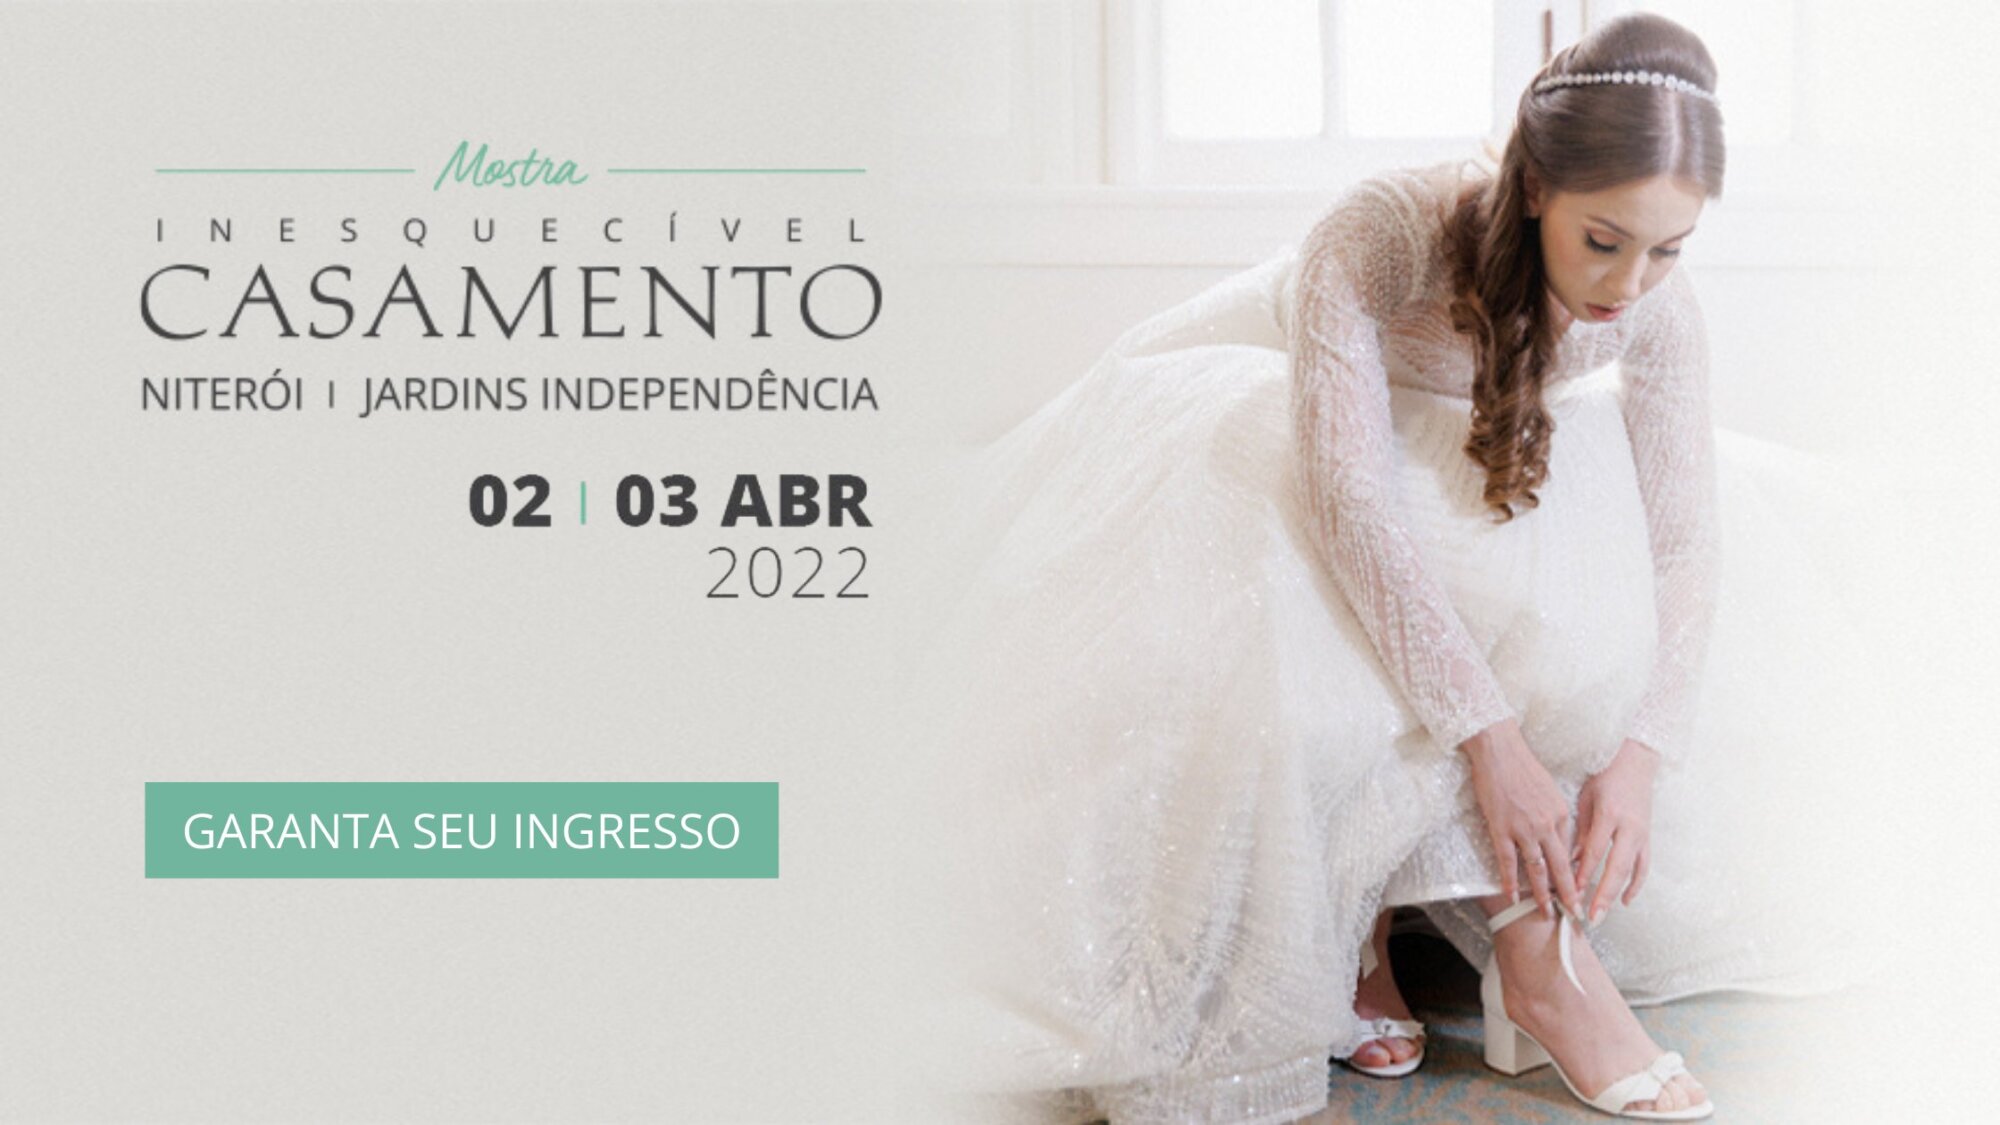 Mostra Inesquecível Casamento Niterói 2022 - Gatanta seu ingresso